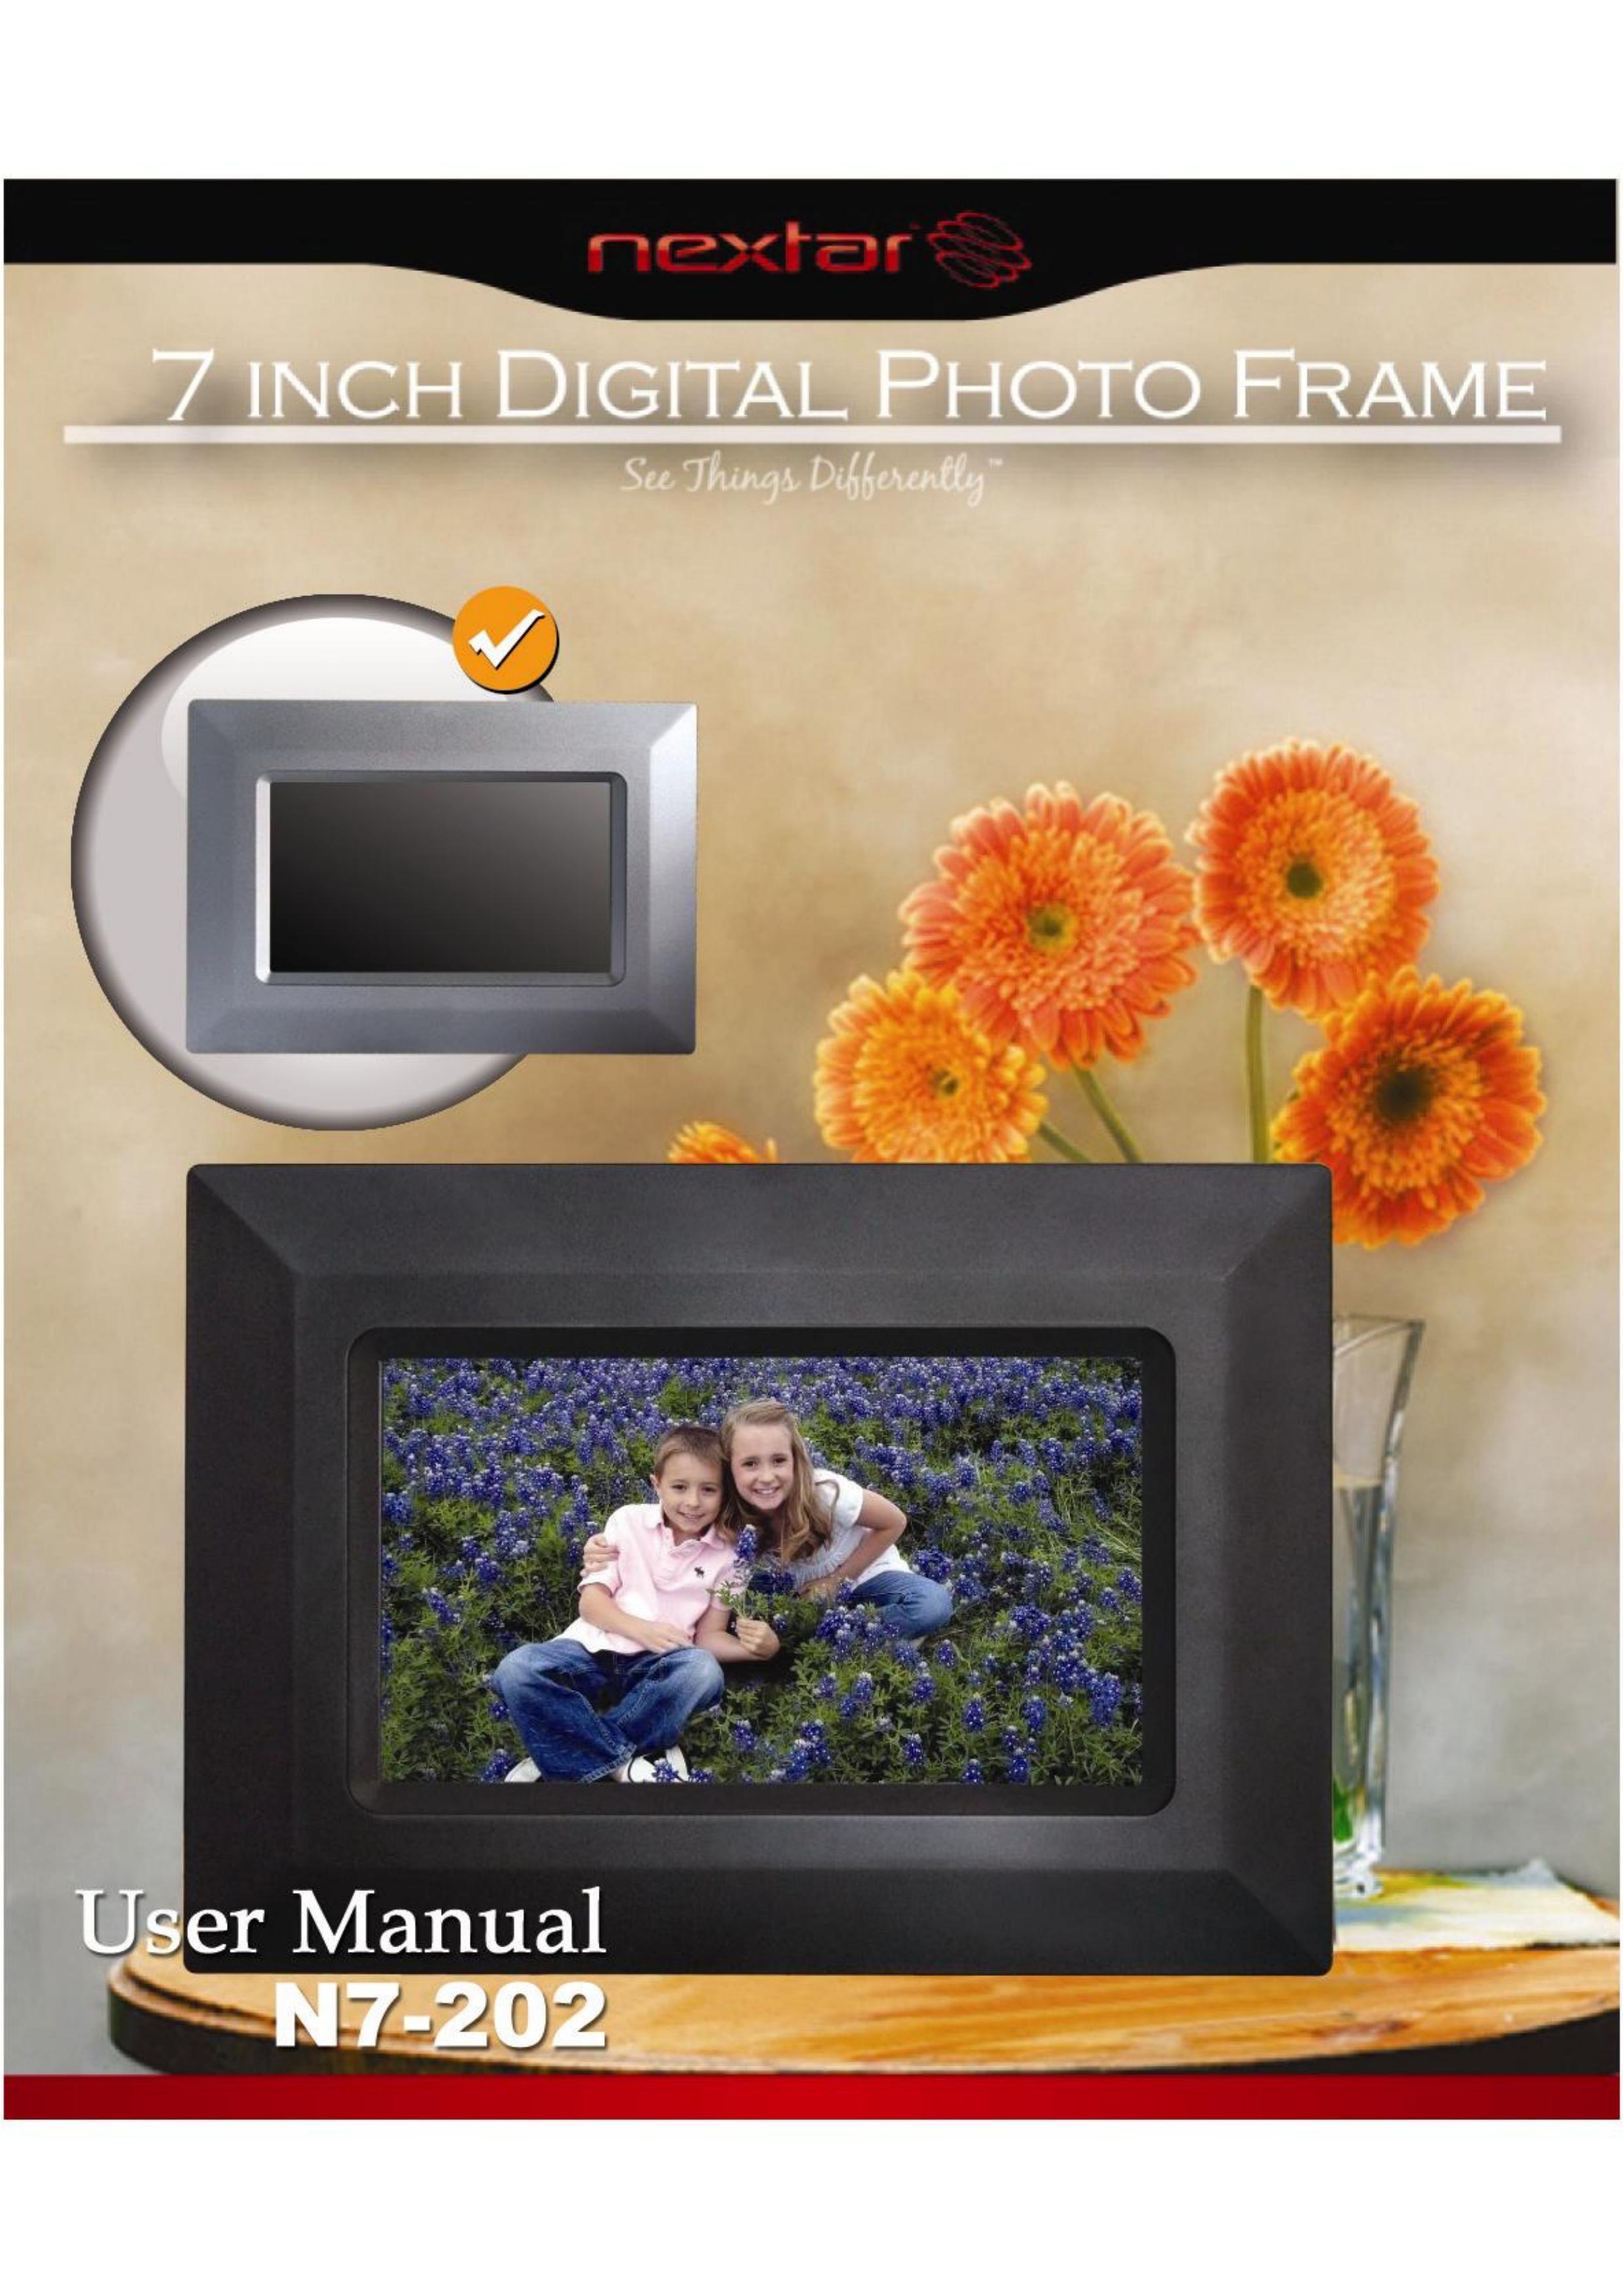 Nextar N7-202 Digital Photo Frame User Manual